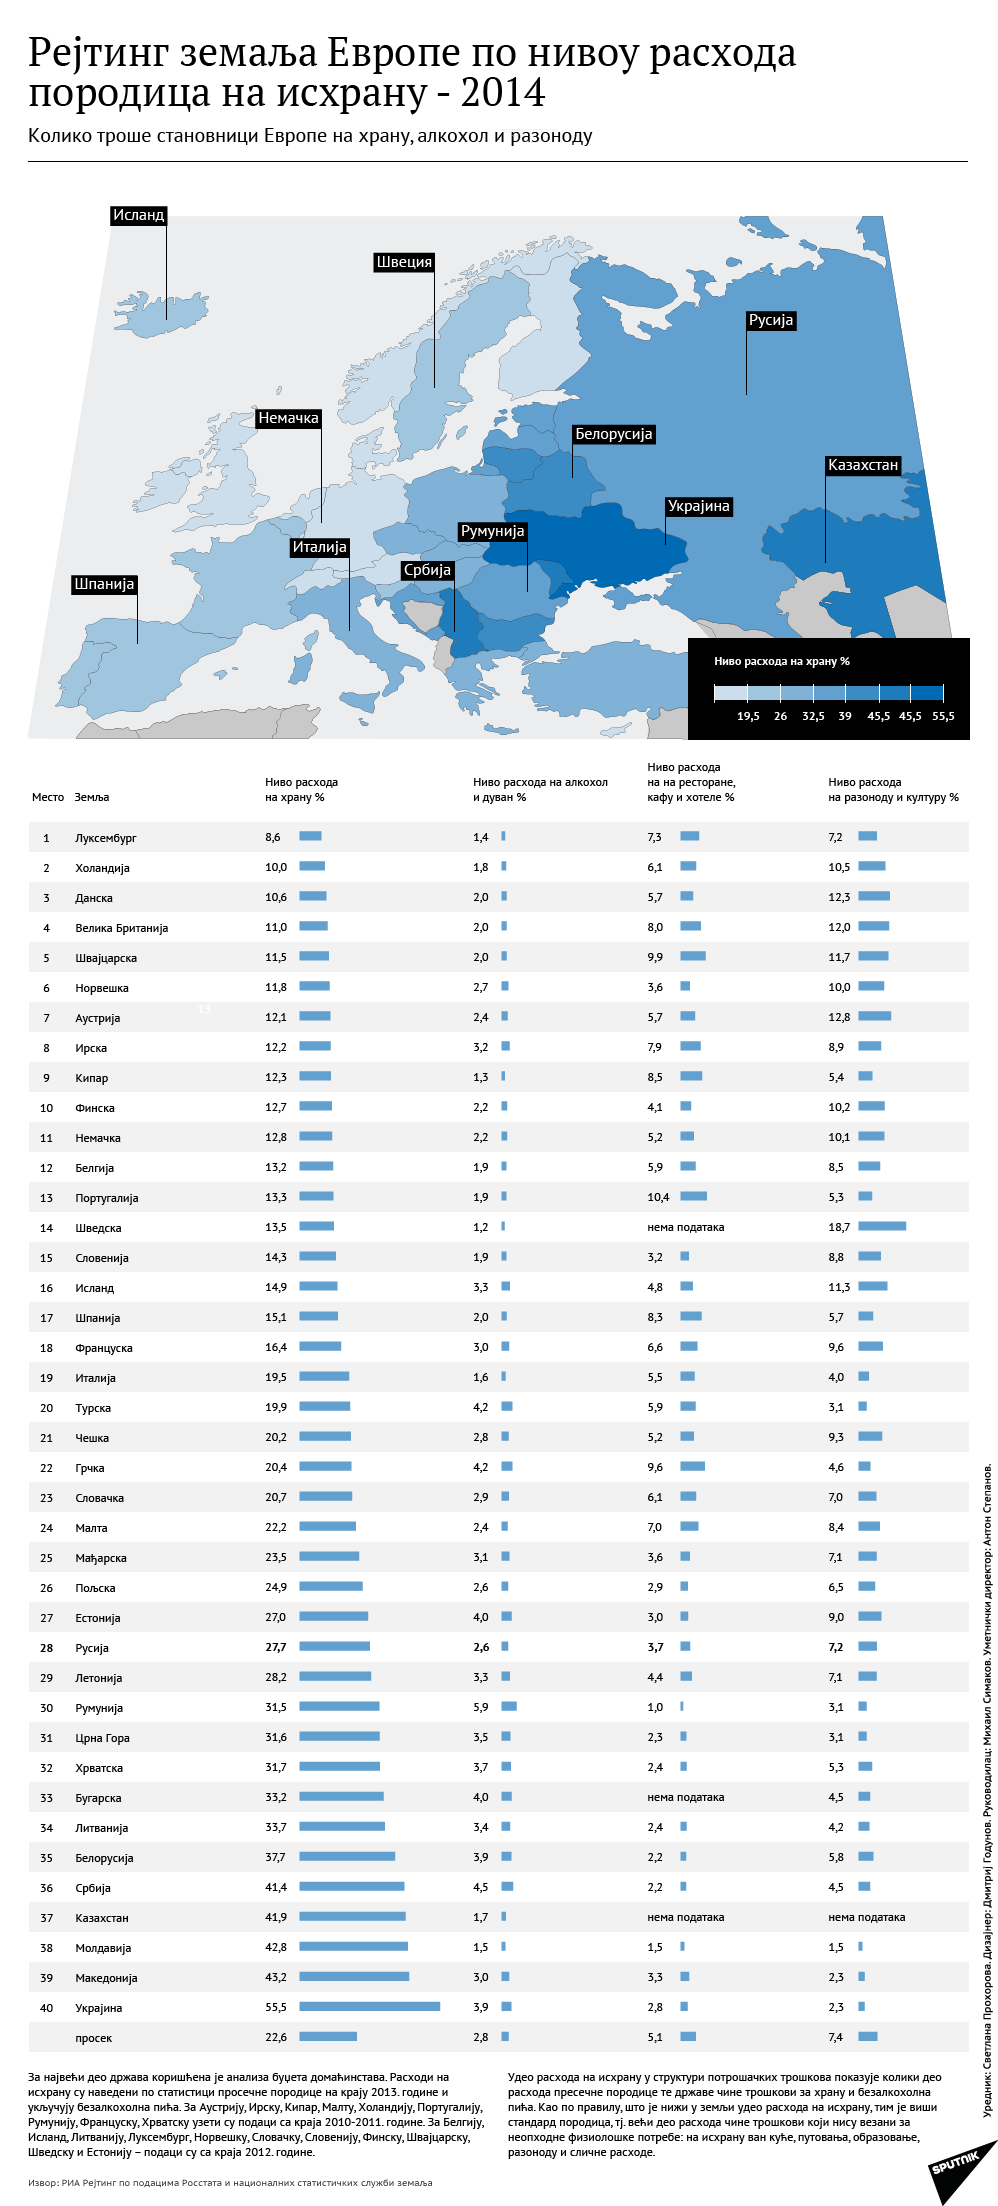 Рејтинг земаља Европе по нивоу расхода породица на исхрану - 2014 - Sputnik Србија